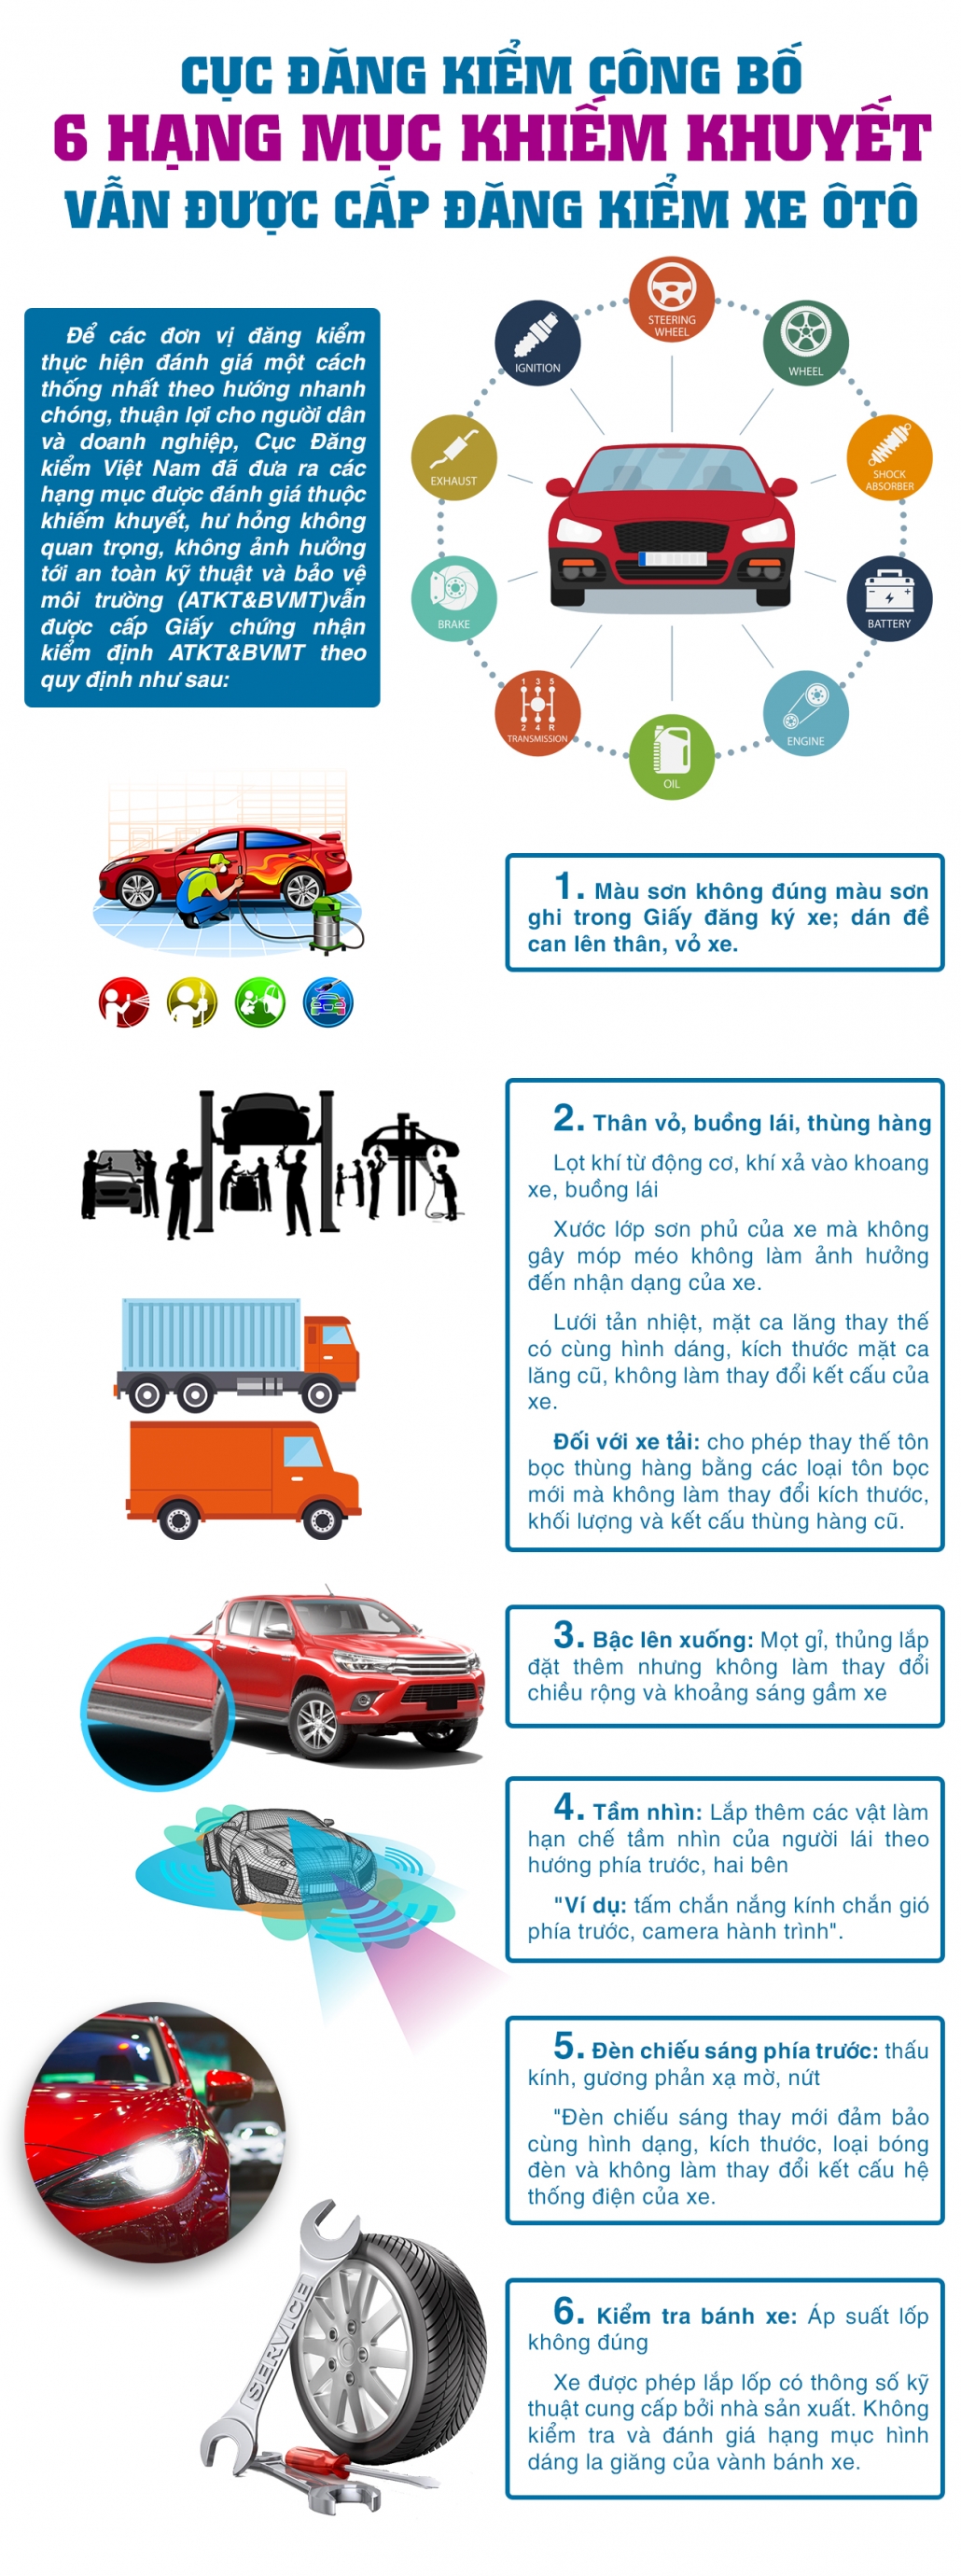 [Infographic]Cục Đăng kiểm công bố 6 hạng mục khiếm khuyết vẫn được cấp đăng kiểm xe ôtô